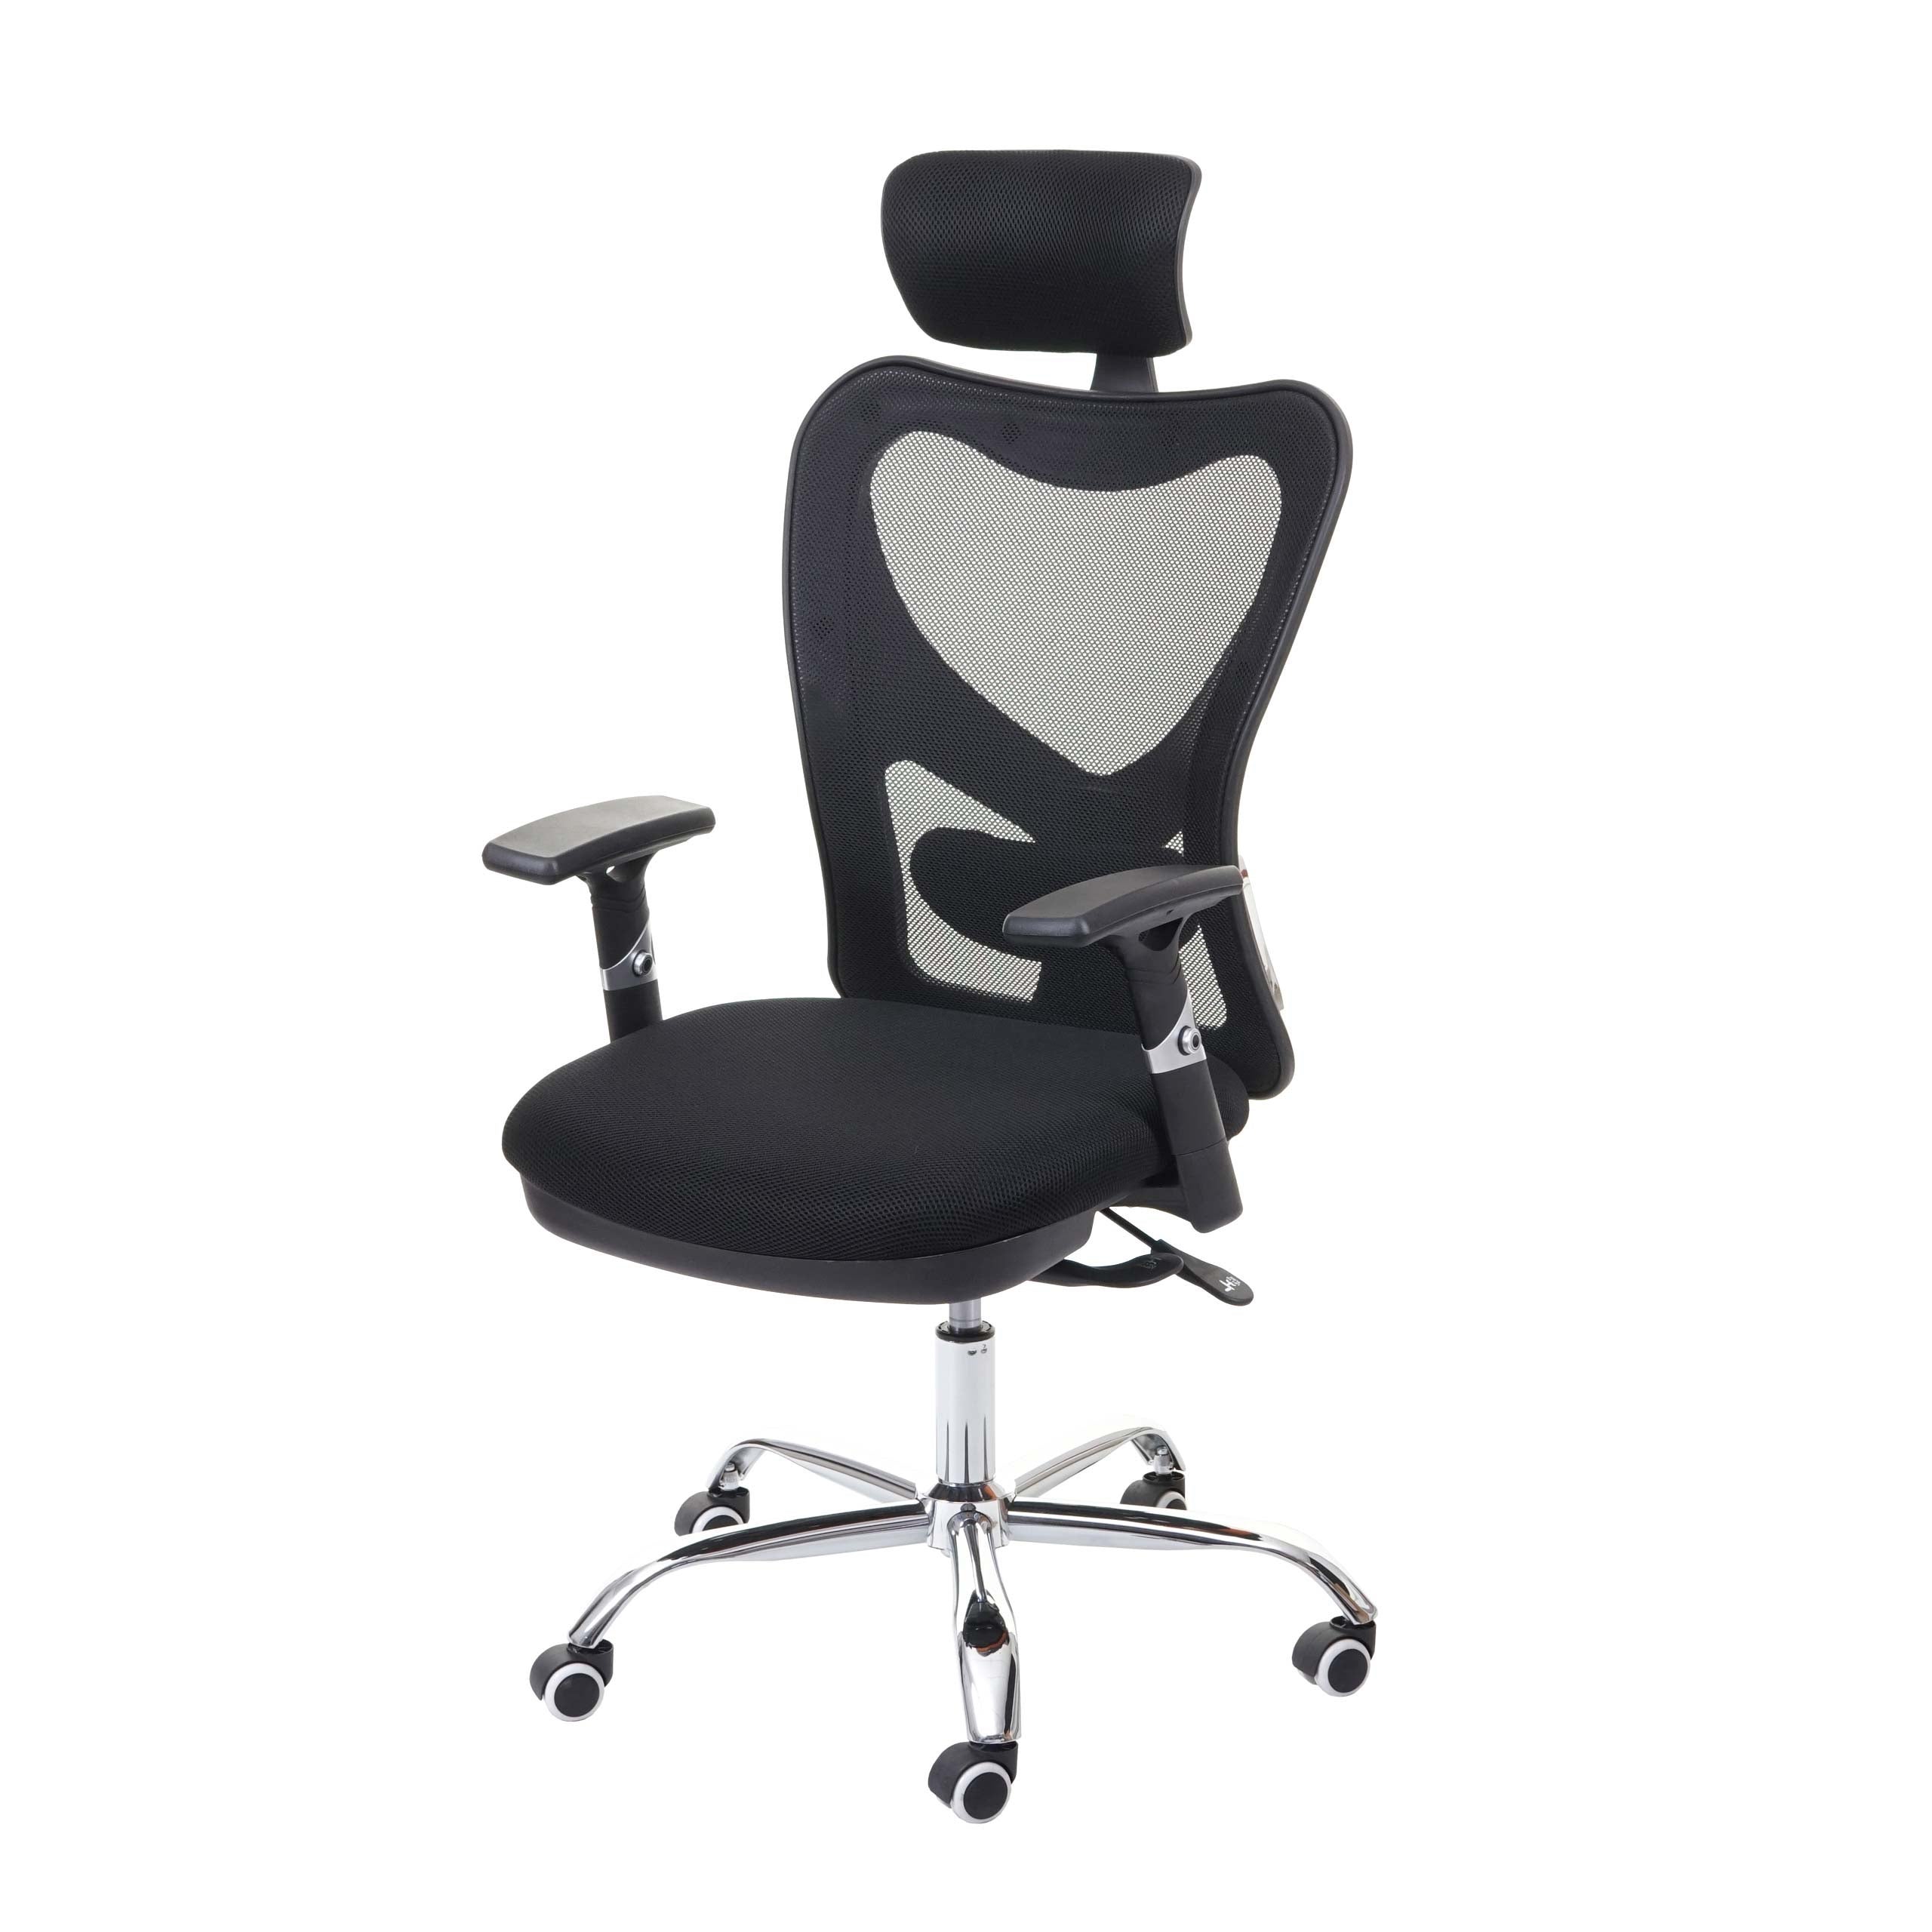 Chaise de bureau, capacité de 152 kg, chaise ergonomique en maille